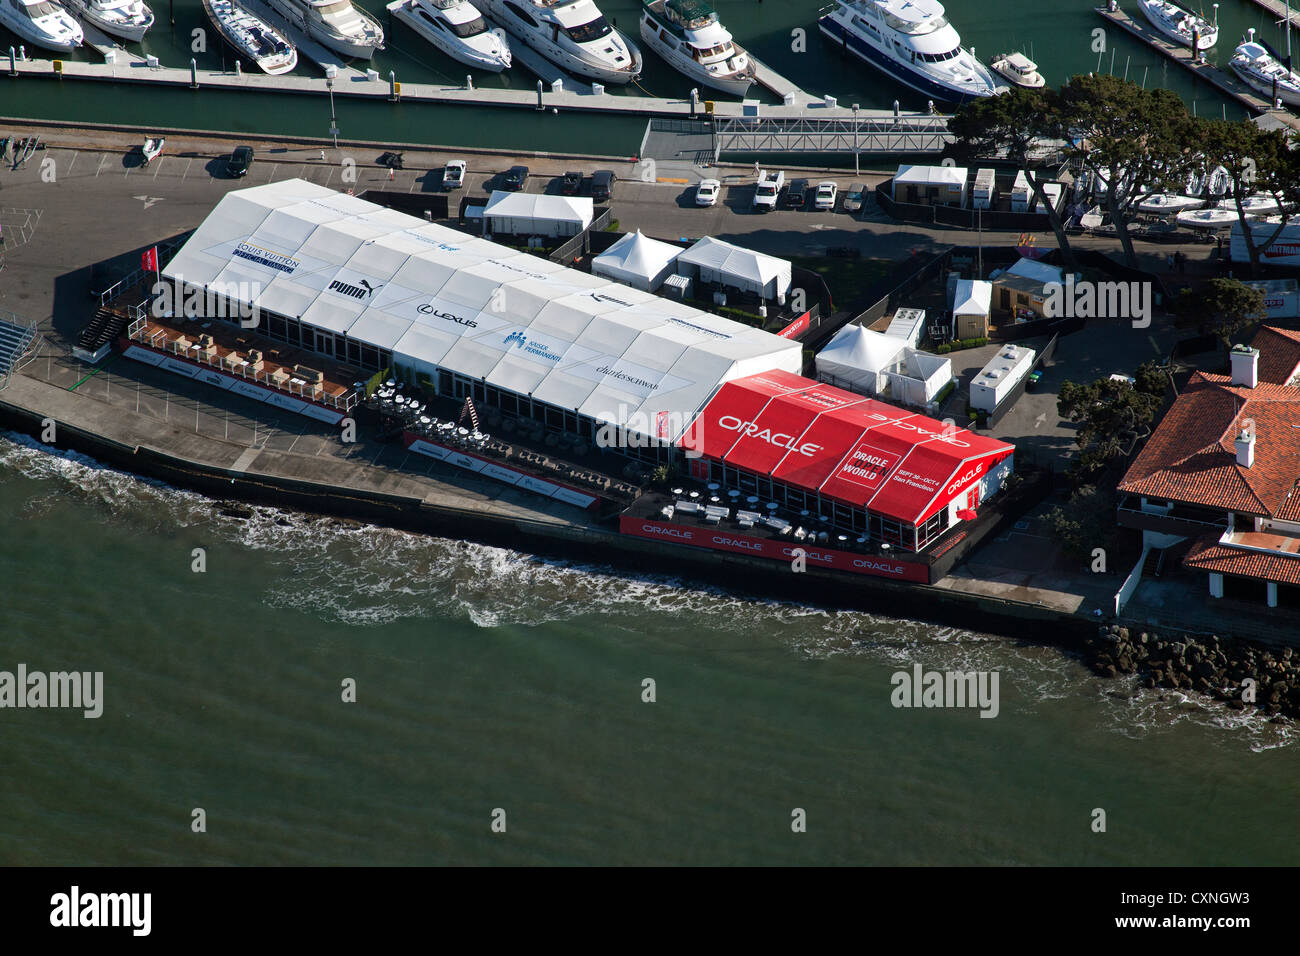 Fotografía aérea de la Copa América de regata de veleros de la bahía de San Francisco, California Foto de stock